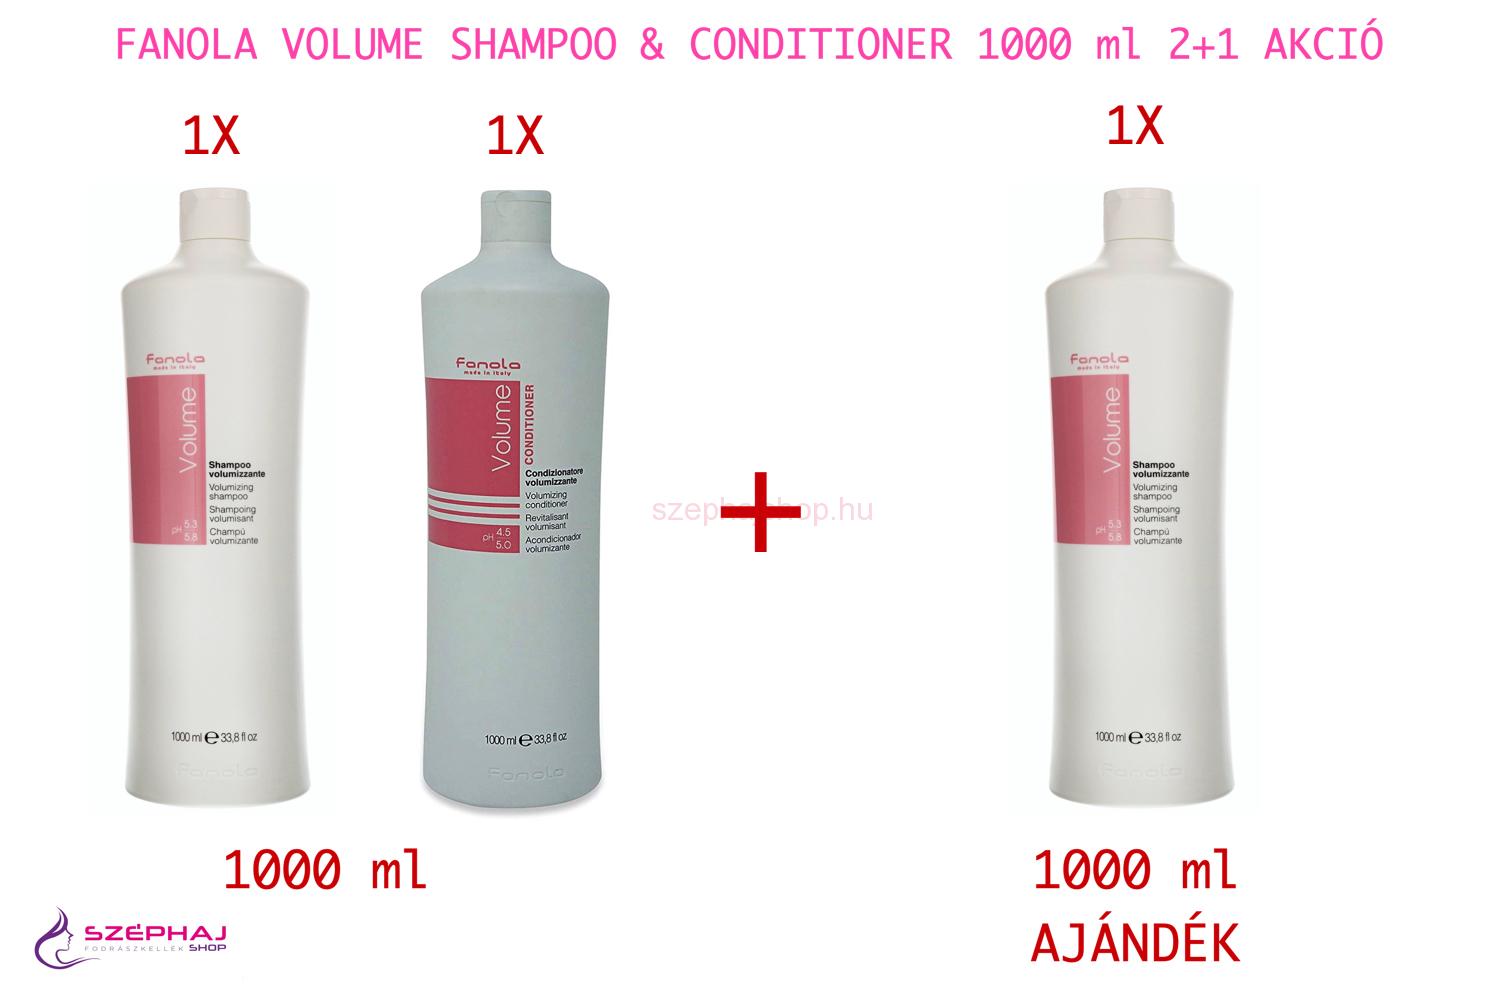 FANOLA Volume Shampoo & Conditioner 1000 ml 2+1 AKCIÓ